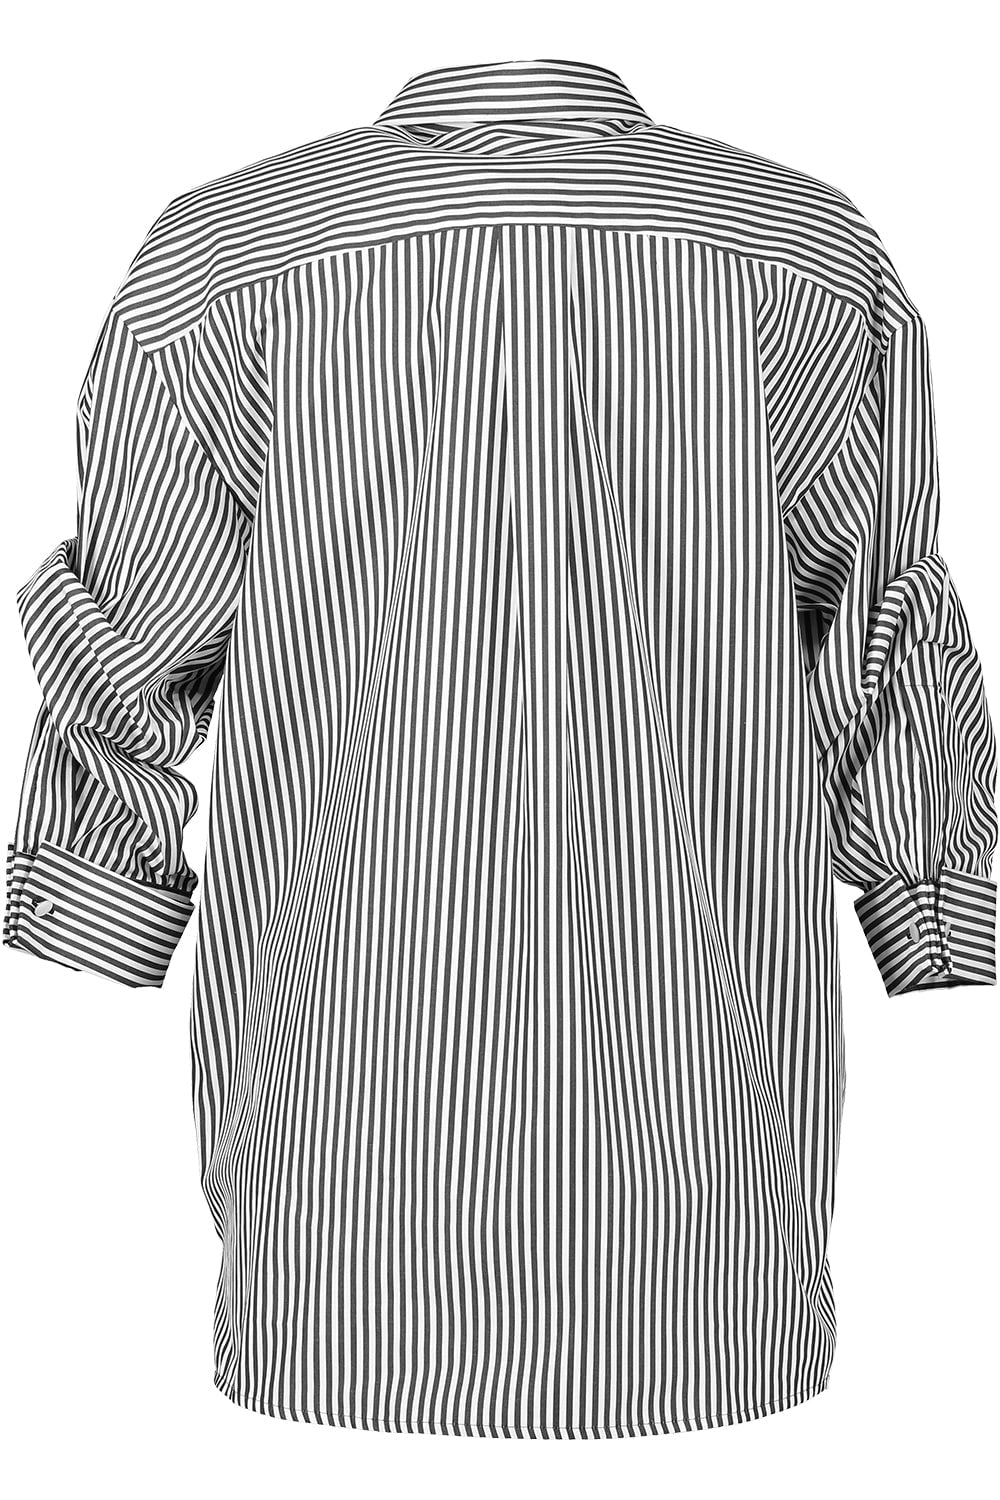 MICHAEL KORS-Push Sleeve Shirt-